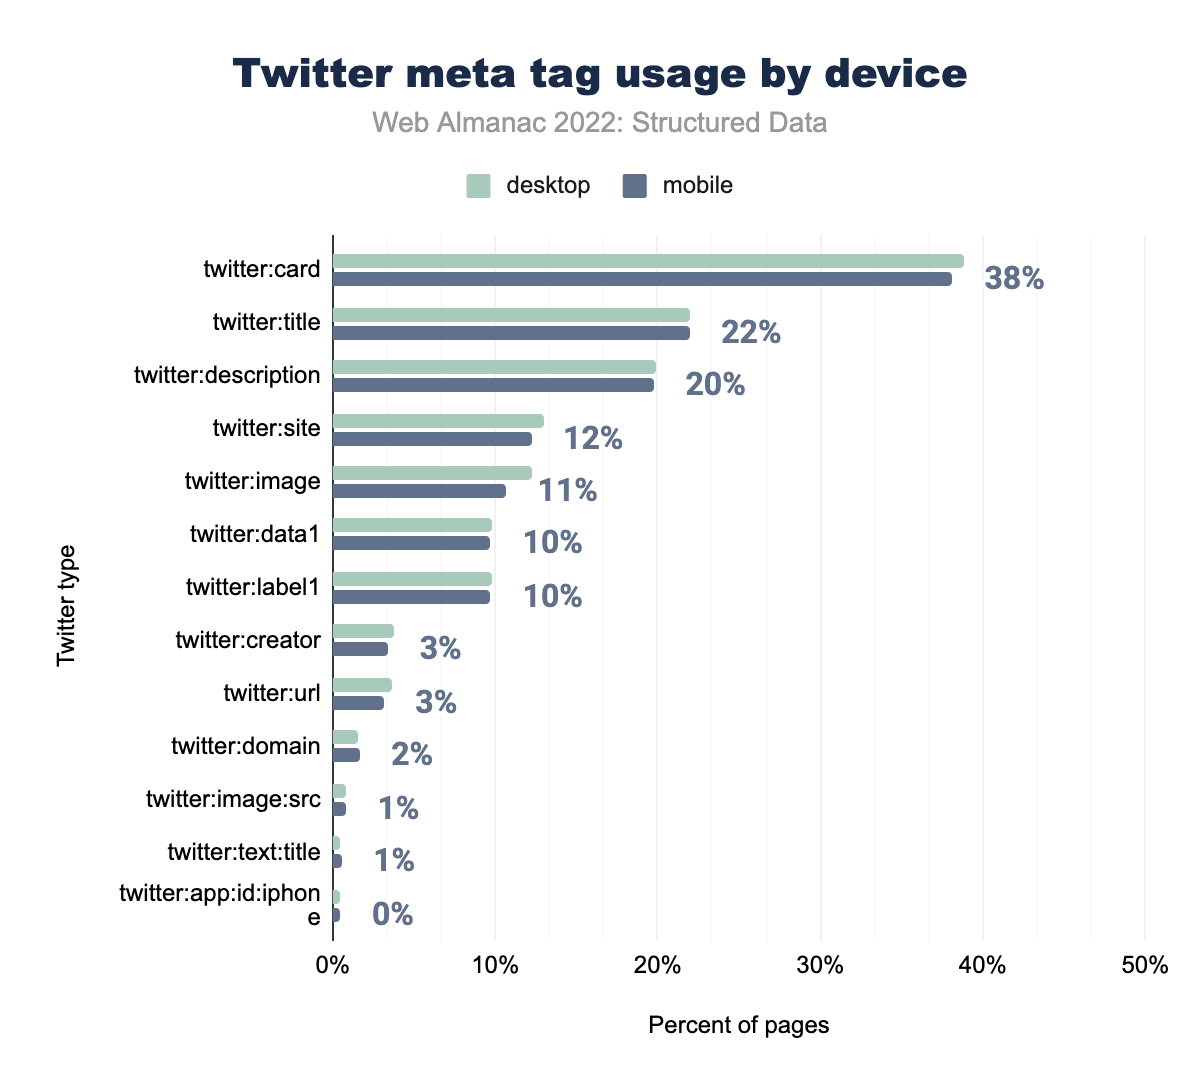 Utilizzo dei meta tag di Twitter per dispositivo